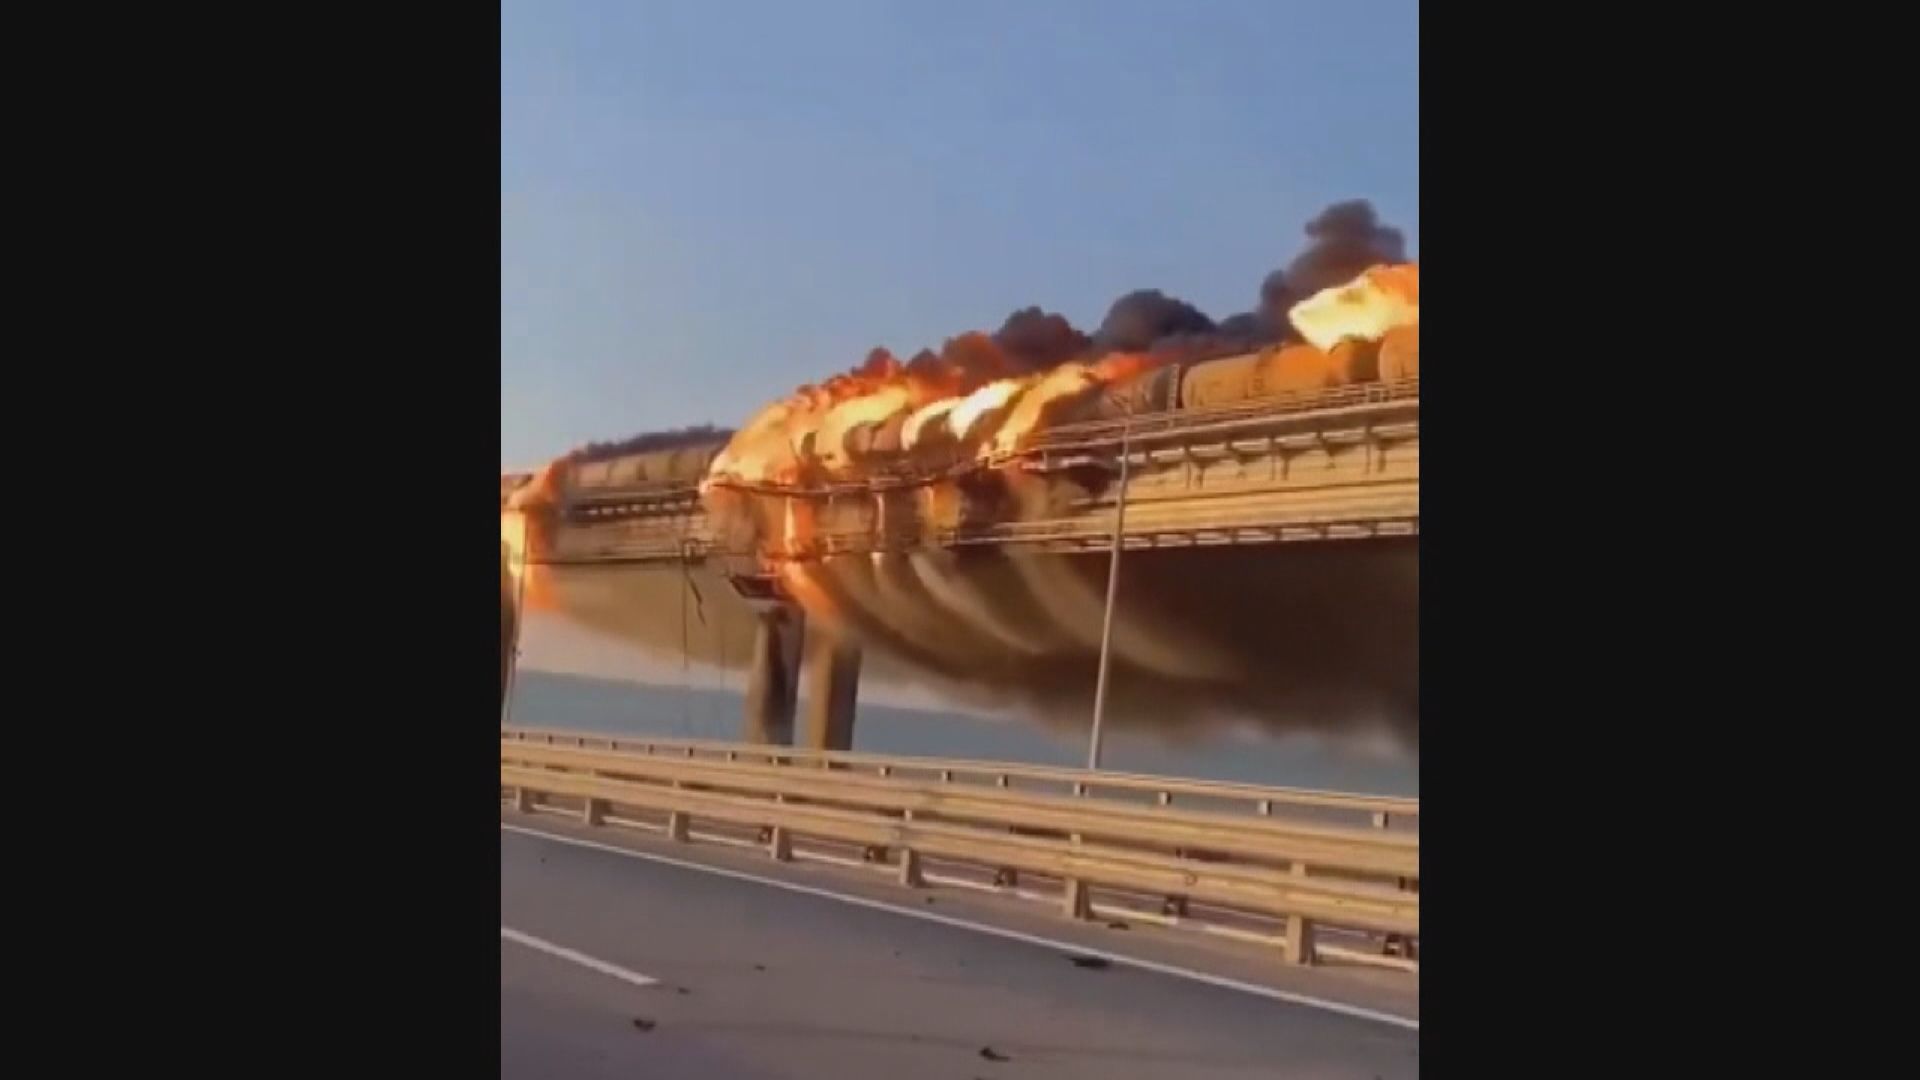 烏克蘭傳媒指克里米亞大橋傳出爆炸聲 地方當局稱大橋出現緊急情況